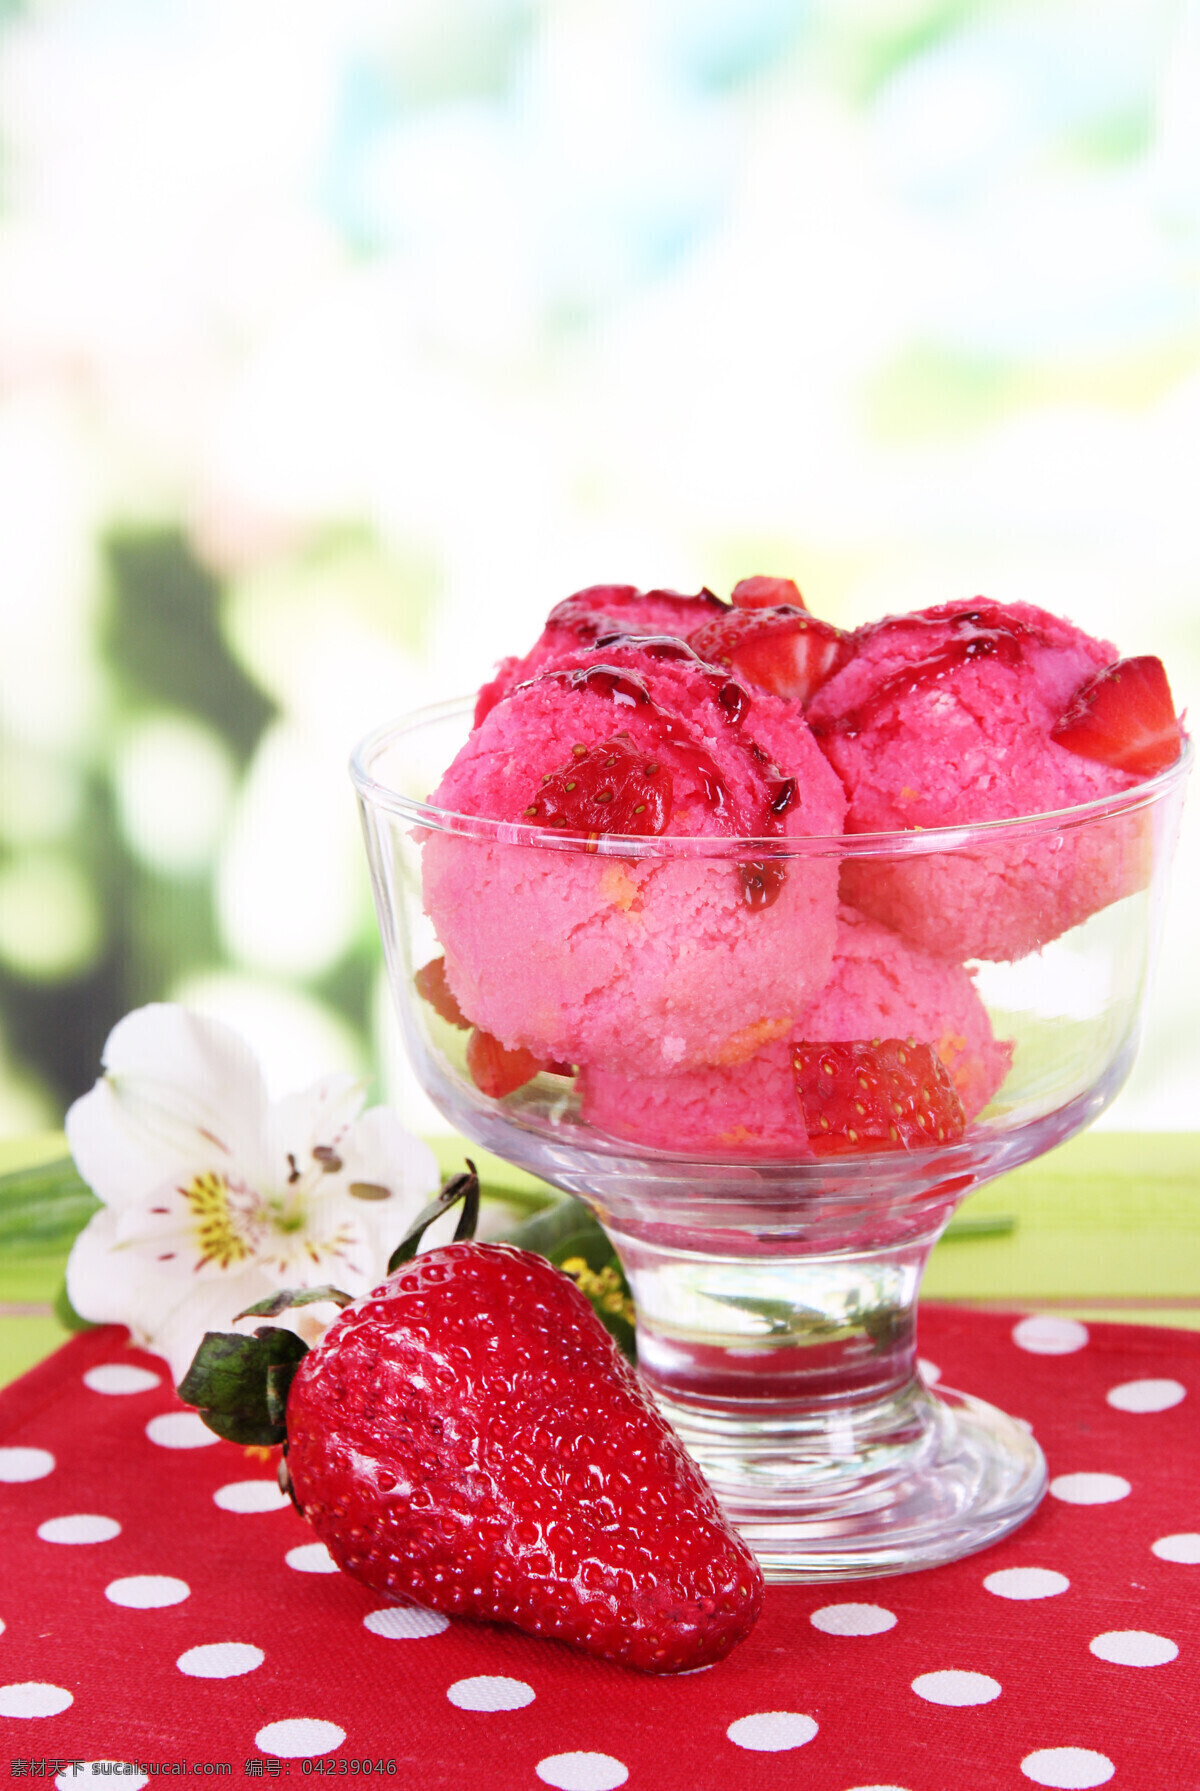 草莓 冰淇淋 草莓冰淇淋 冰激凌 甜品美食 美食图片 餐饮美食